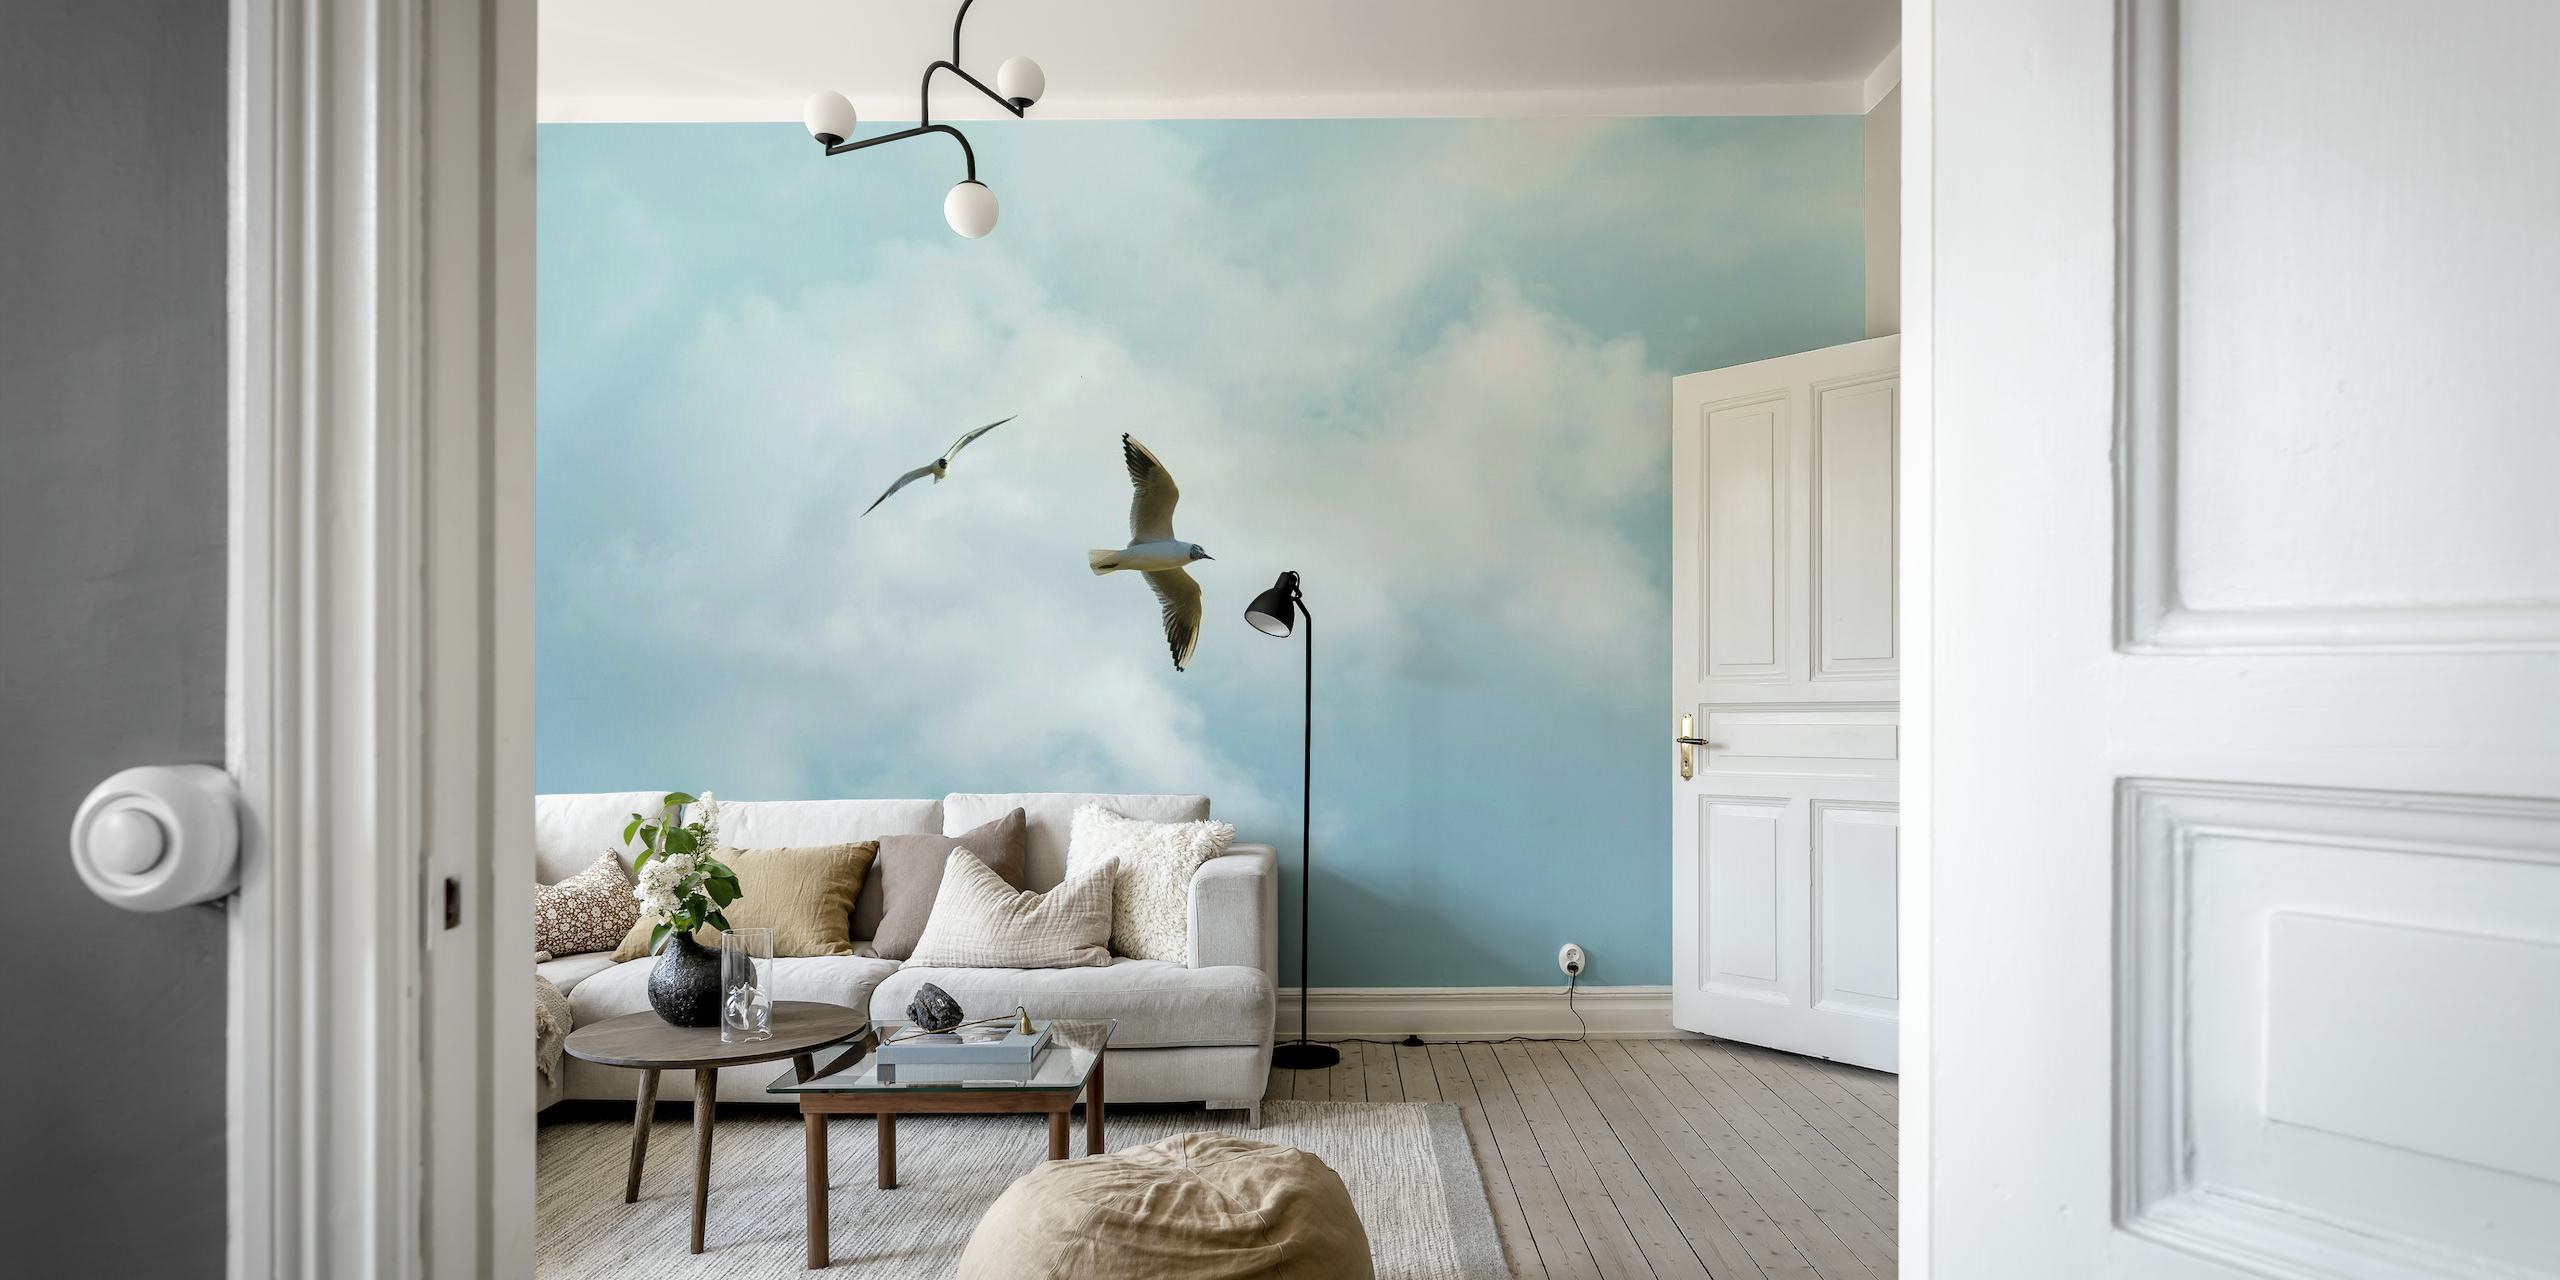 Två sjöfåglar flyger i en fridfull himmel med fluffiga moln väggmålning